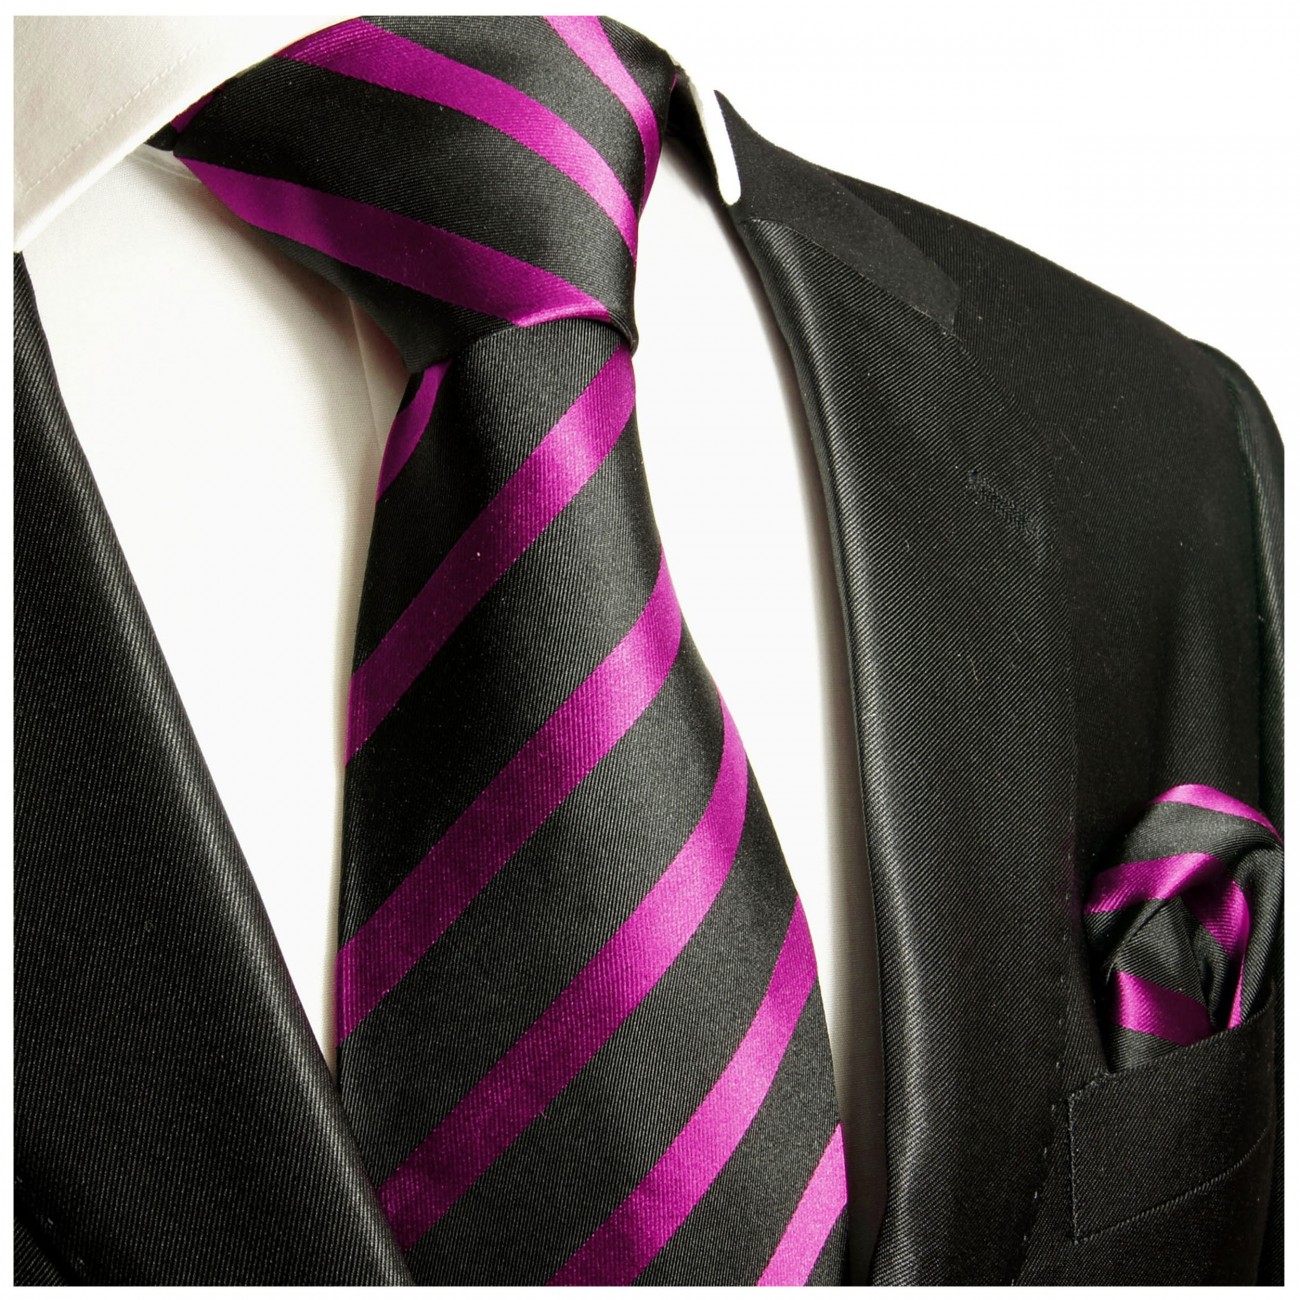 Krawatte pink schwarz gestreift Seide mit Einstecktuch